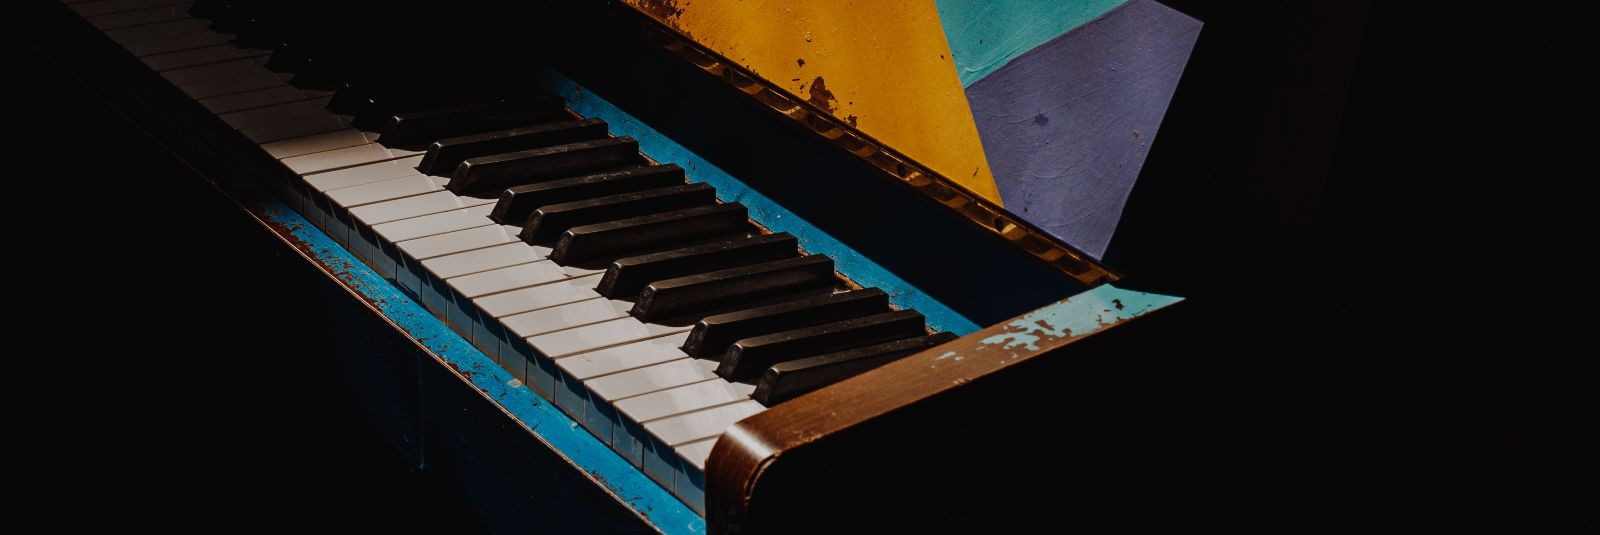 Klaverid on erakordsed instrumendid, mis võivad pakkuda helilist naudingut ja kaunist muusikat põlvkondade vältel. Kuid aja jooksul võivad klaverid kannatada ku